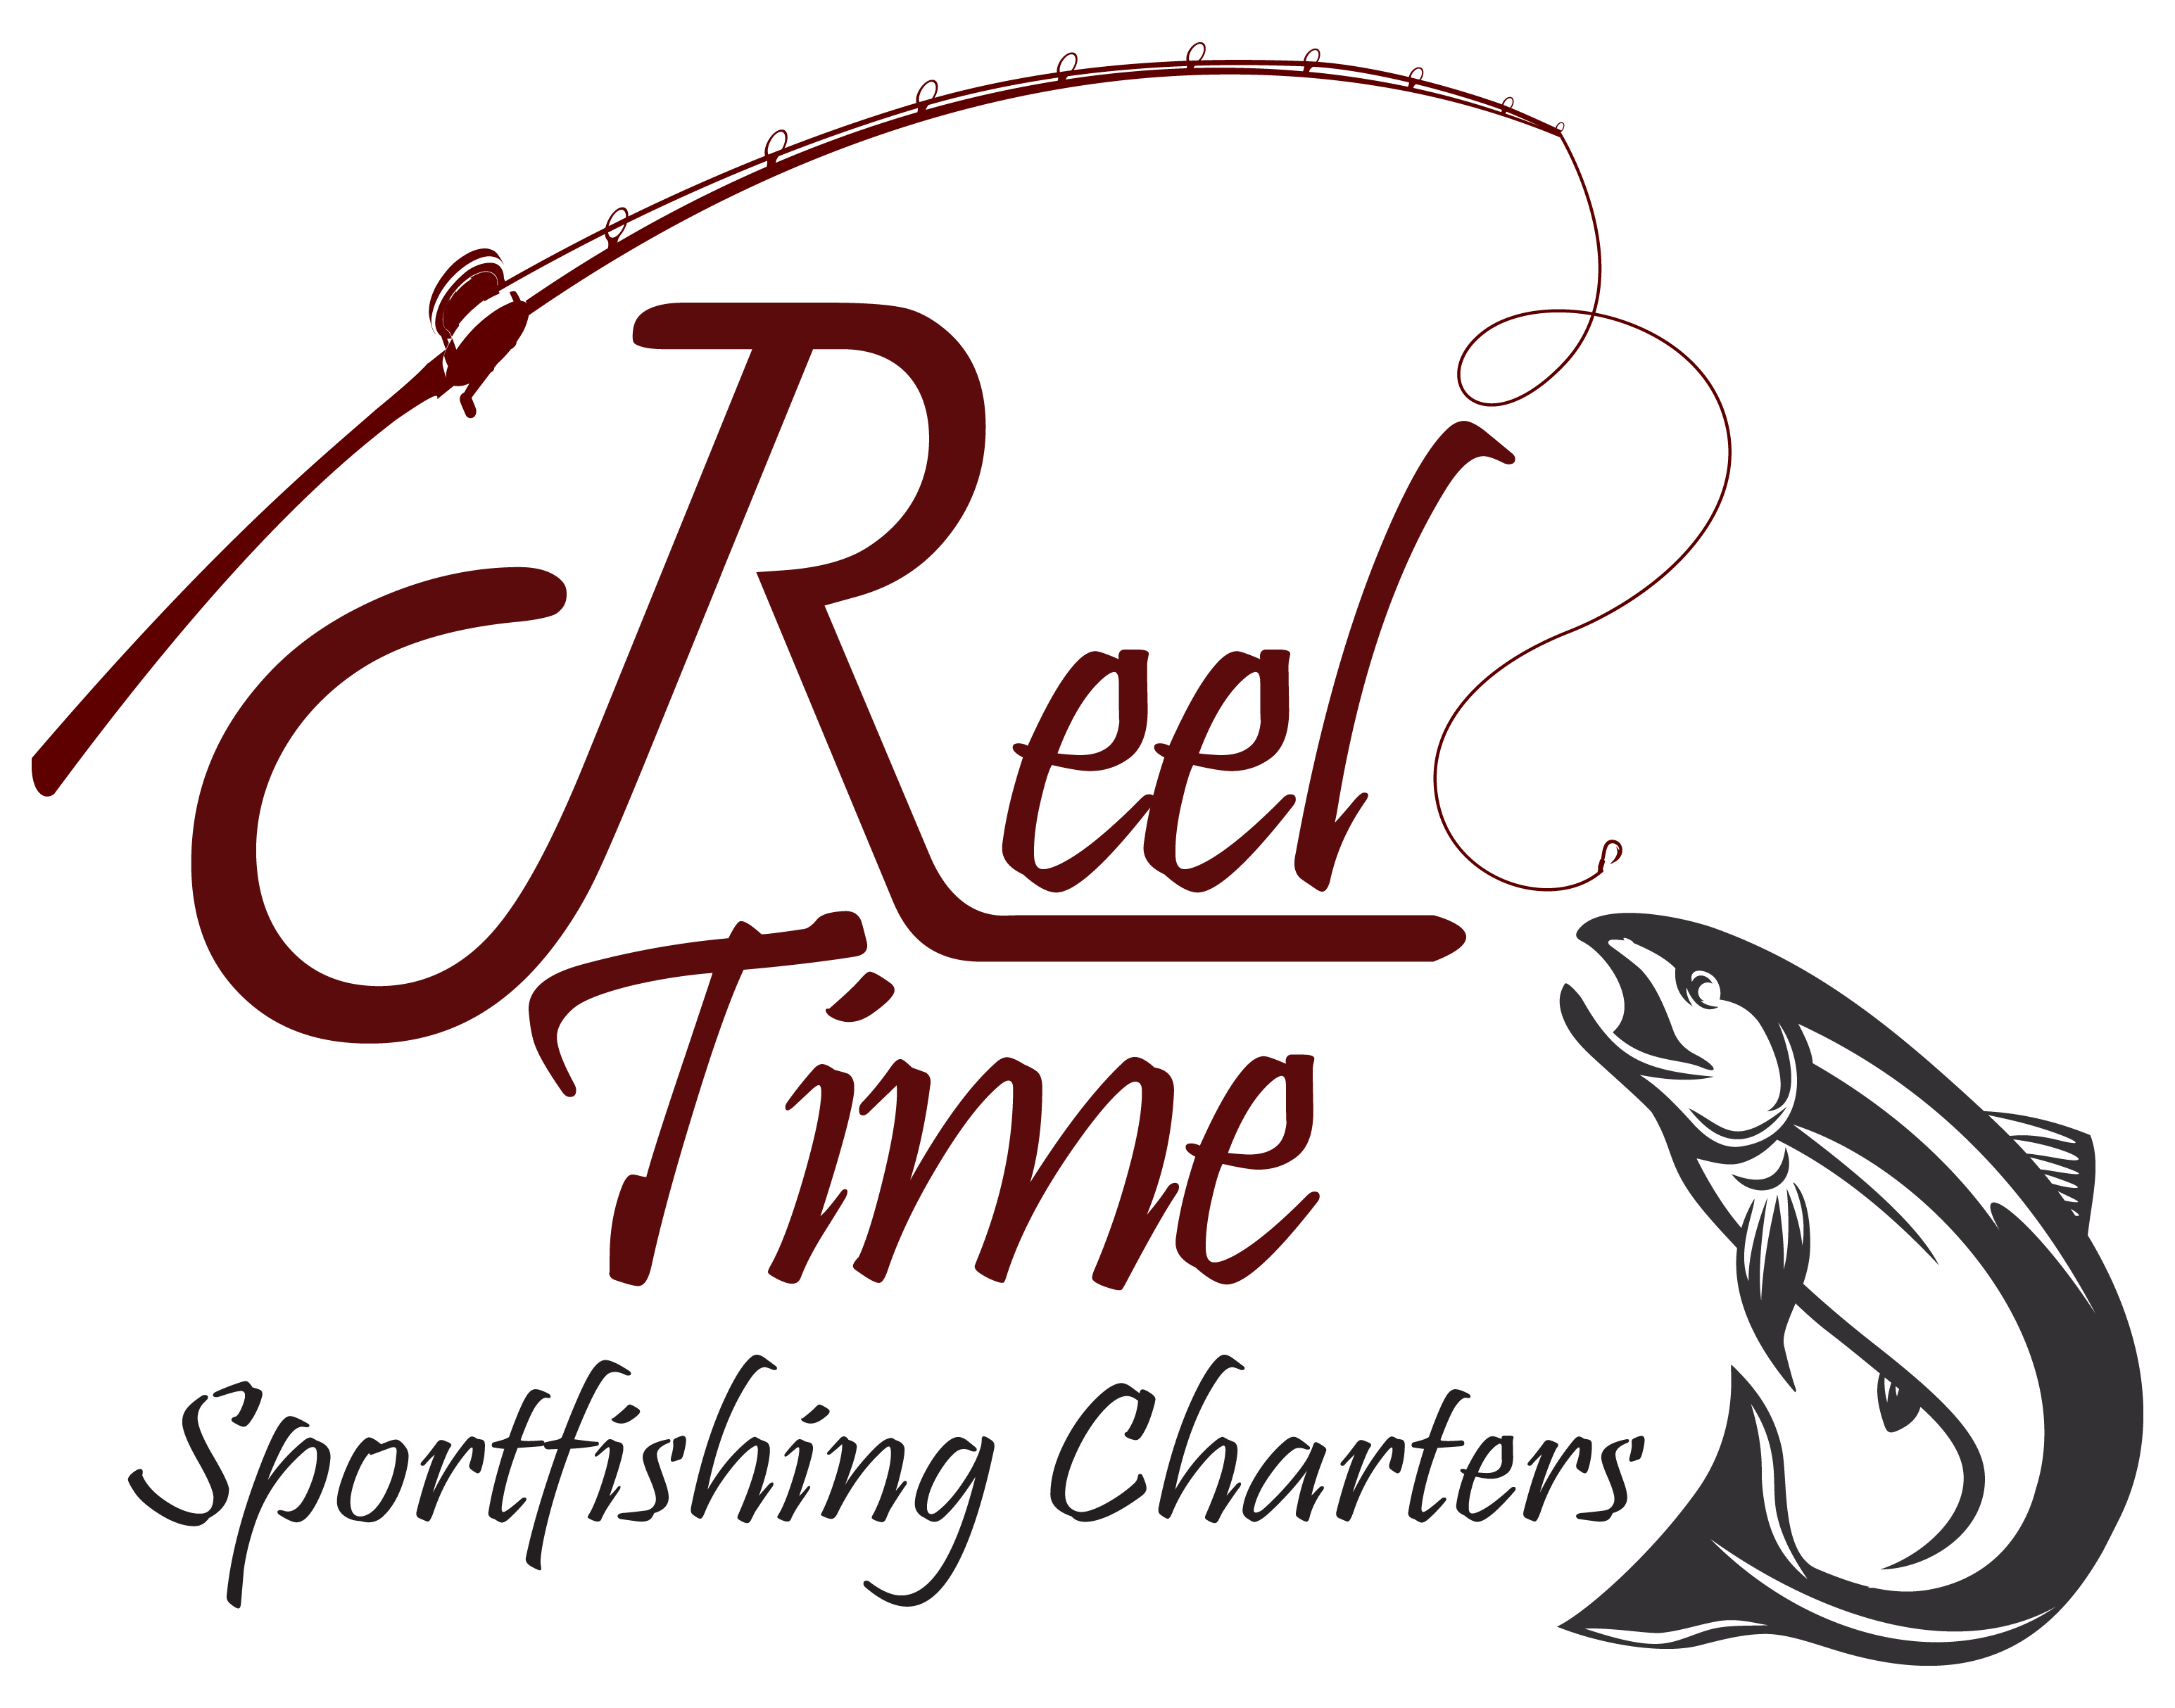 Reel Time Sportfishing